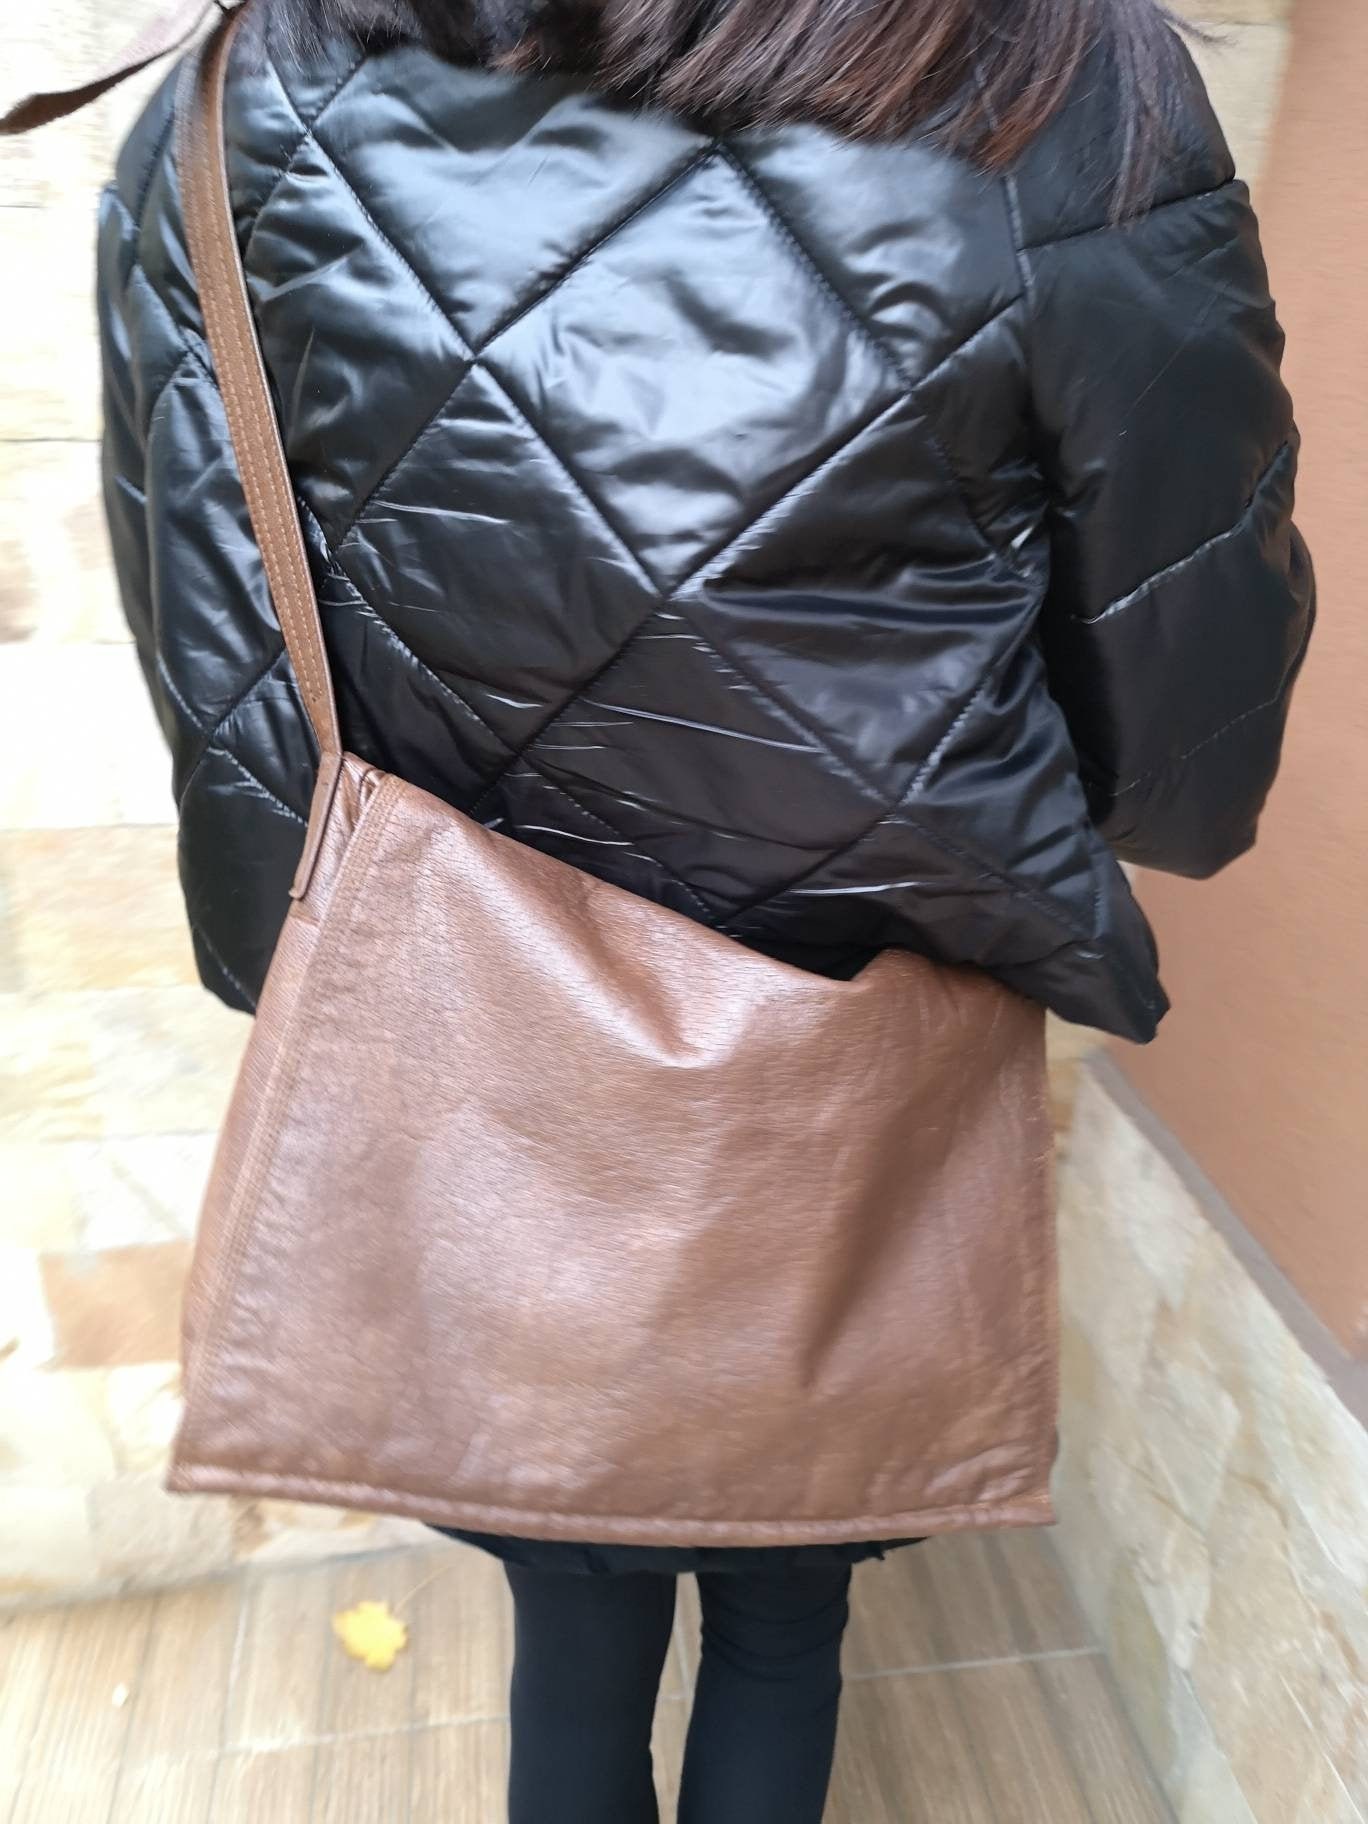 Picard Leather Shoulder Shoulder Bags